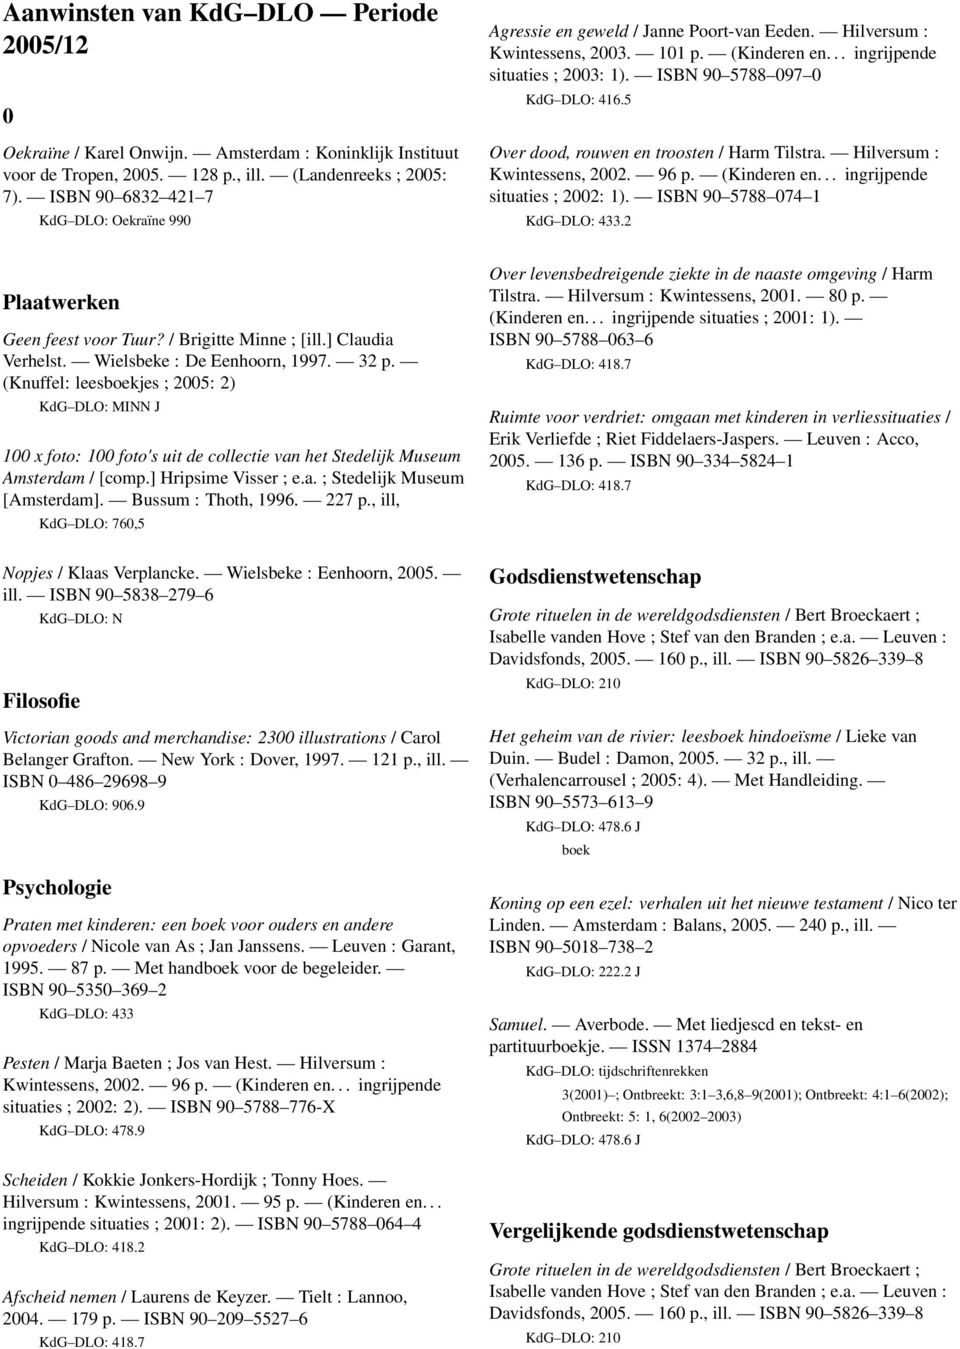 ISBN 90 5788 097 0 KdG DLO: 416.5 Over dood, rouwen en troosten / Harm Tilstra. Hilversum : situaties ; 2002: 1). ISBN 90 5788 074 1.2 Plaatwerken Geen feest voor Tuur? / Brigitte Minne ; [ill.